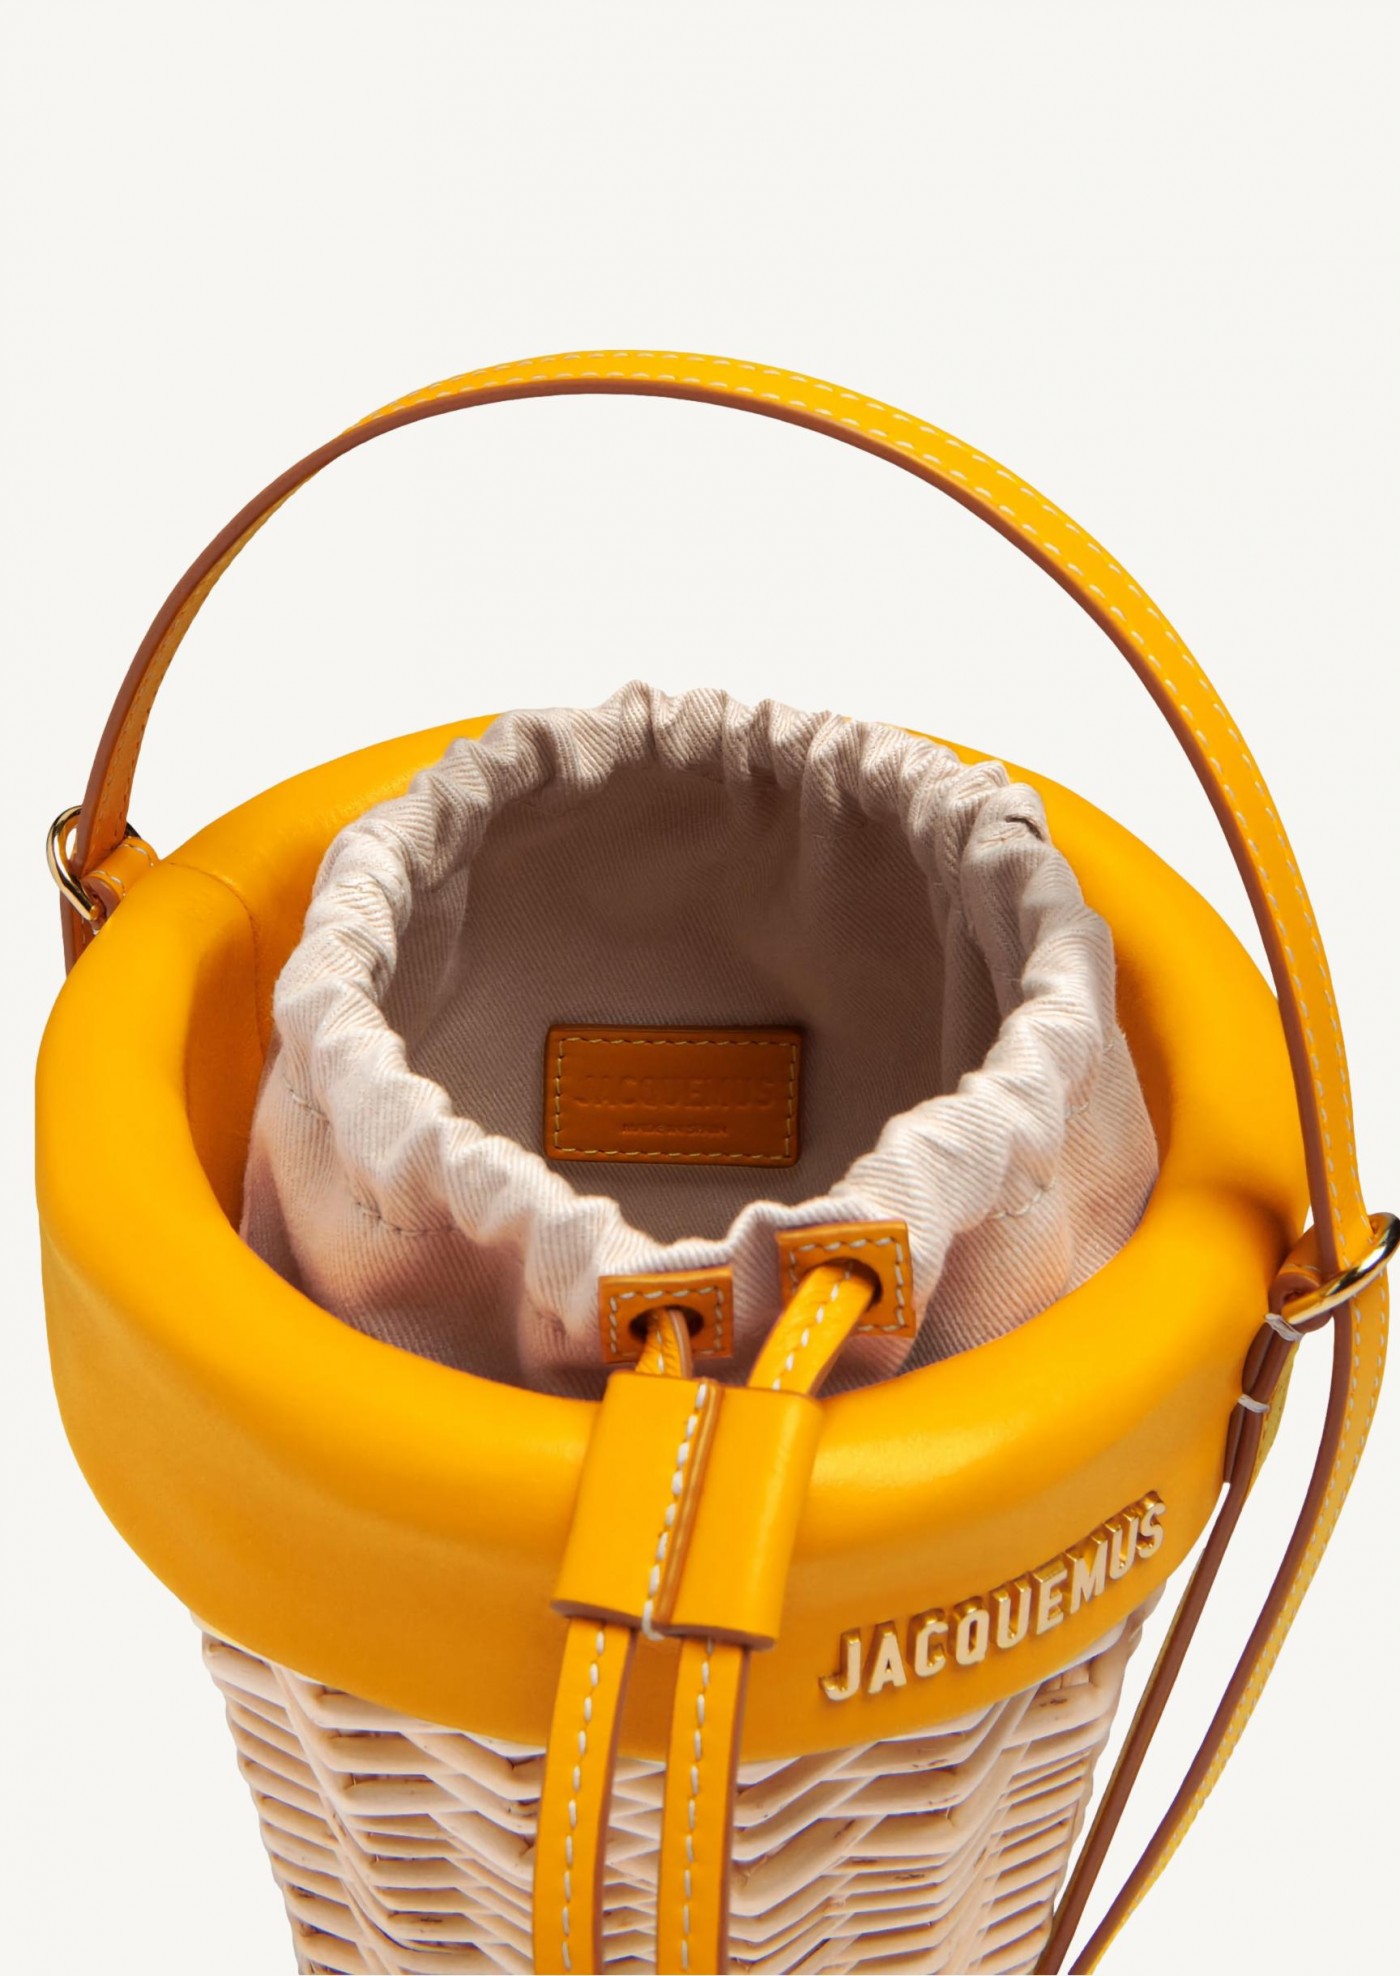 The yellow bucket basket